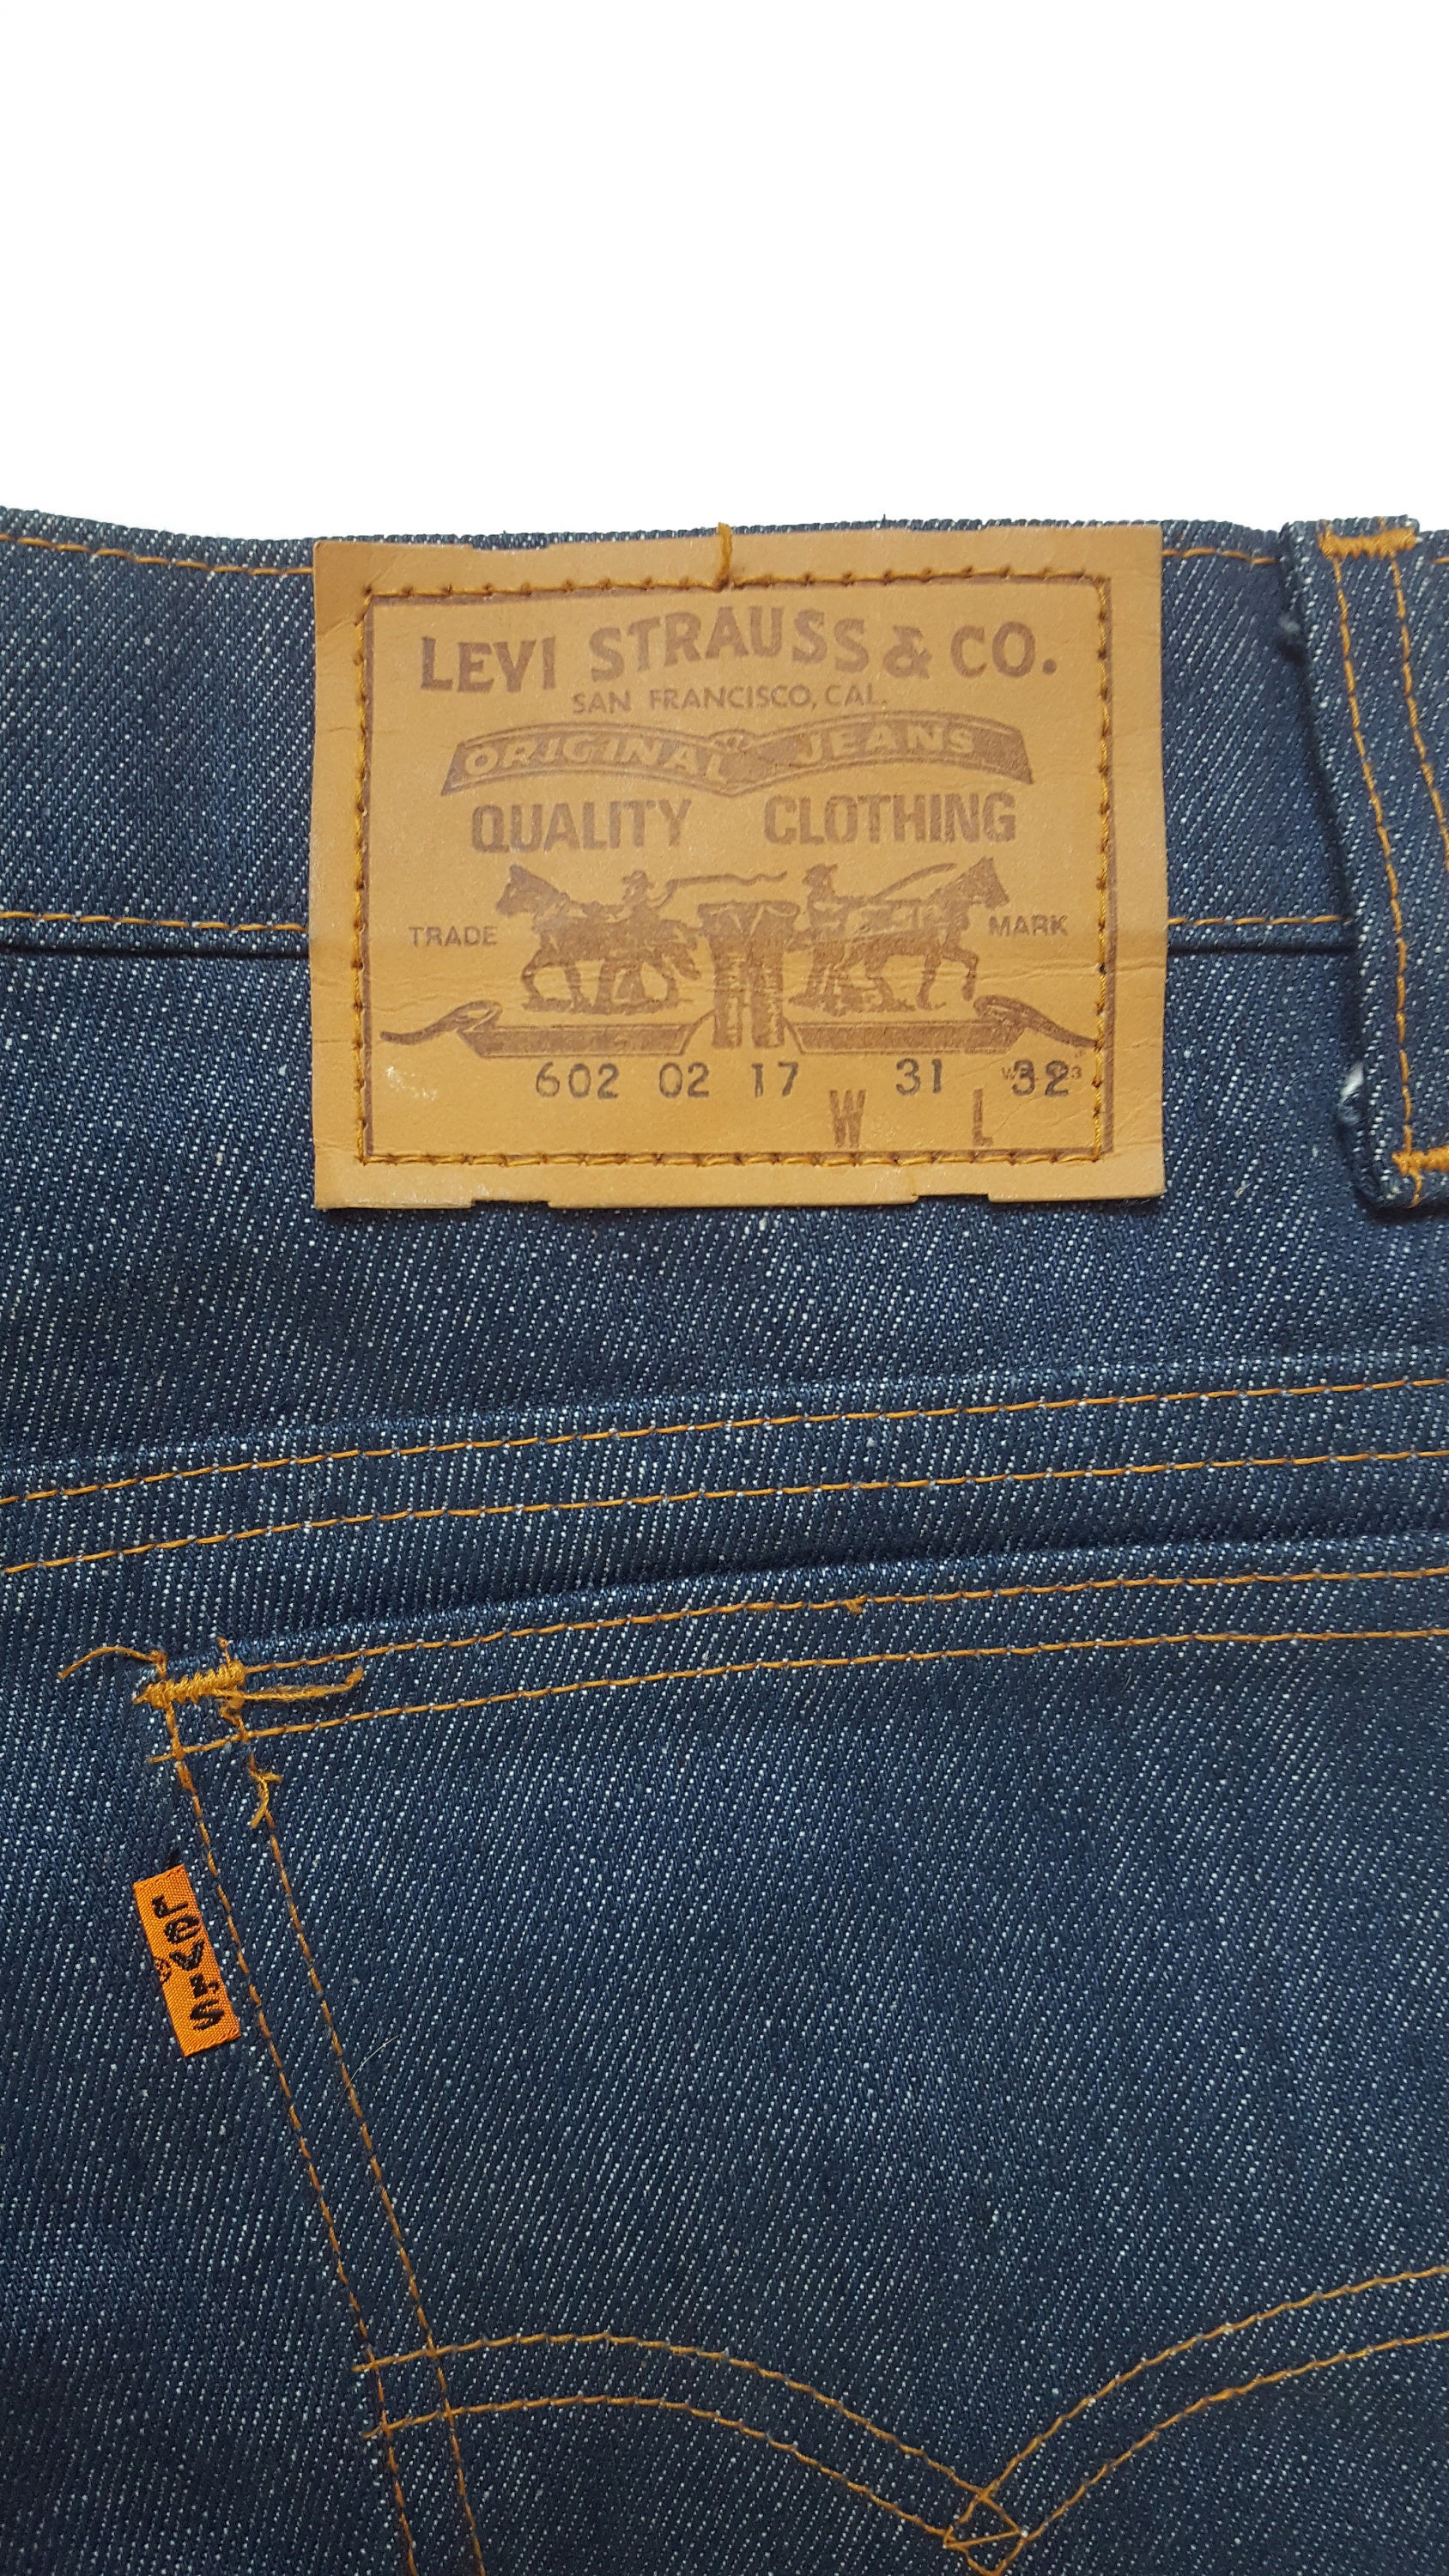 Super Rare Vintage 70s Levis 602 Original Jeans Made in France - Etsy